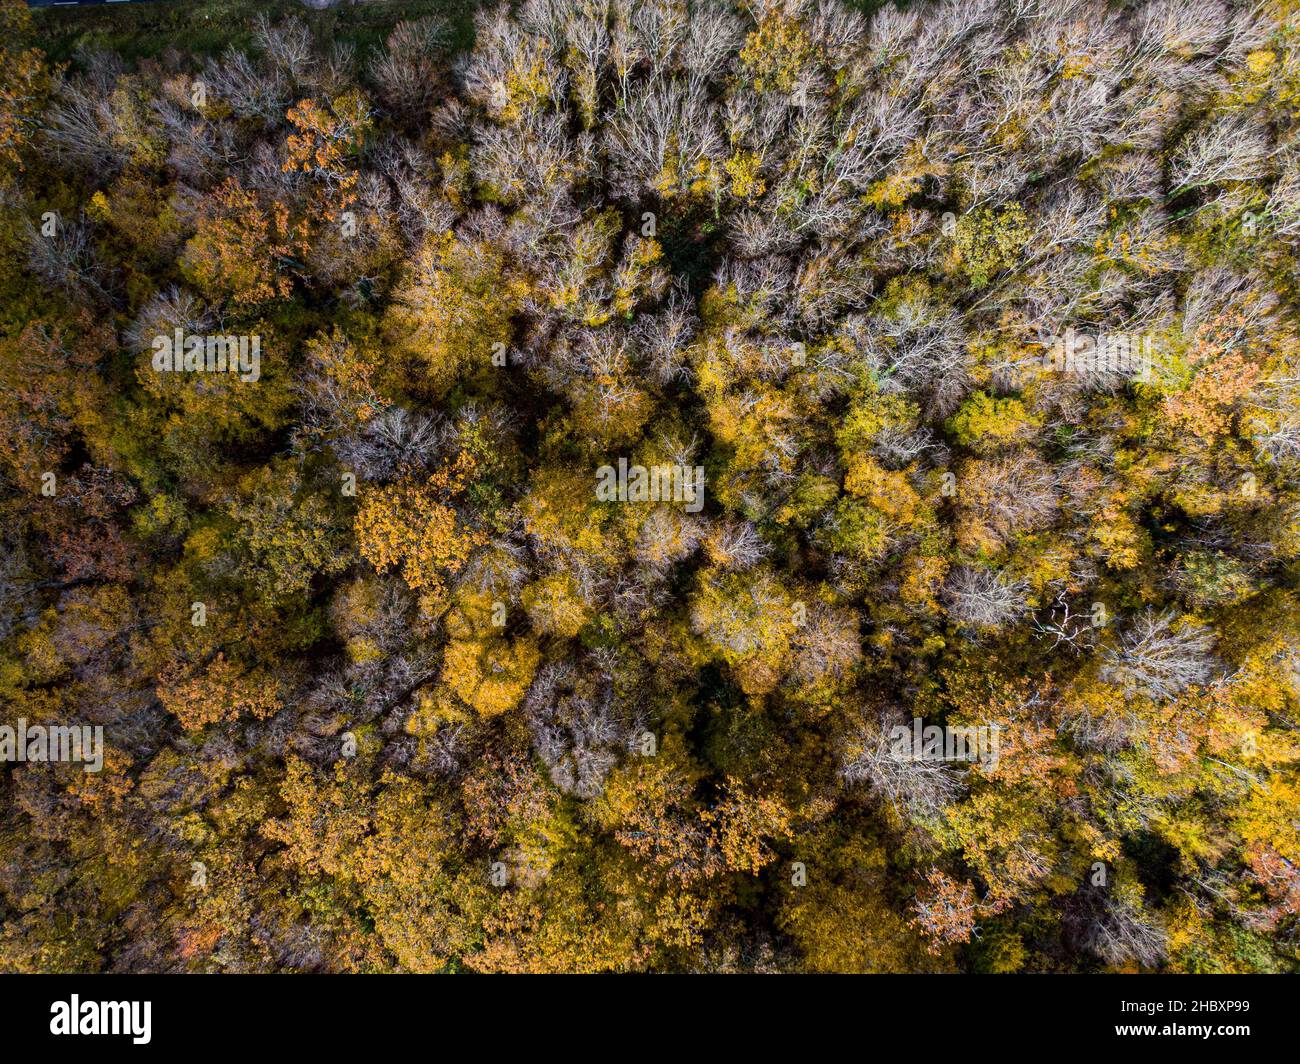 Vue aérienne du dessus de la forêt à feuilles caduques d'automne, fond jaune et coloré Banque D'Images